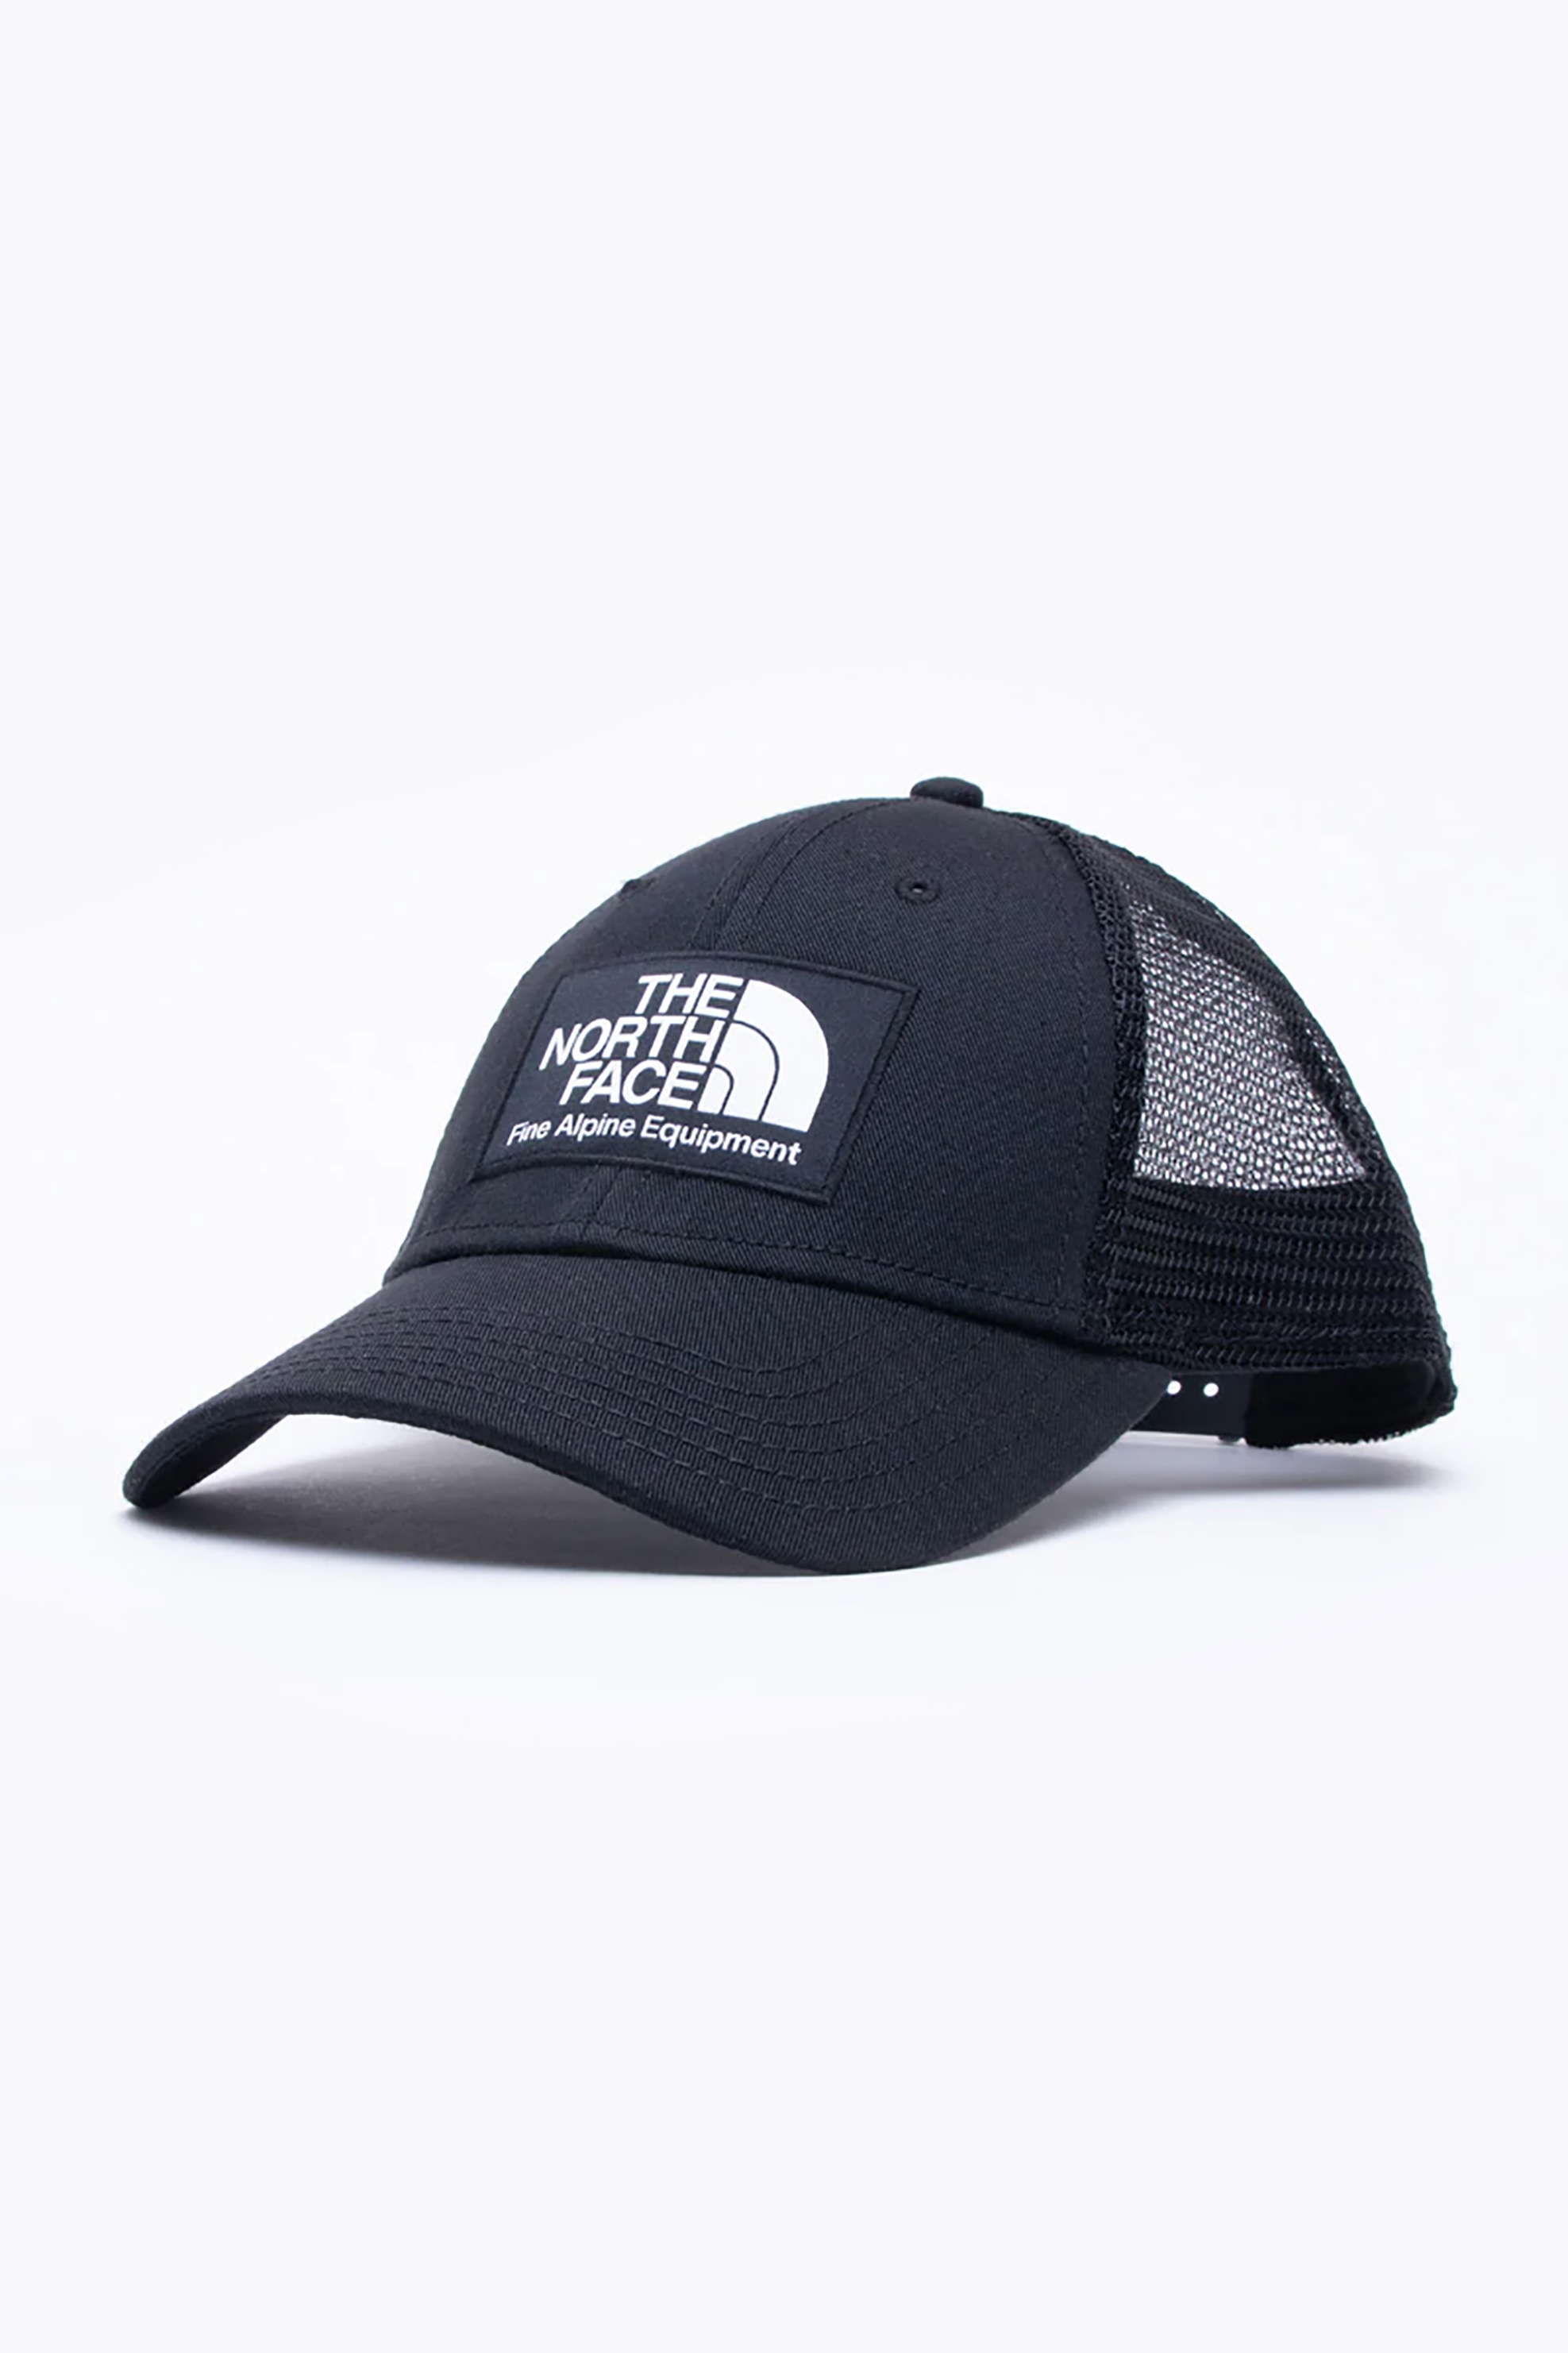 Ανδρική Μόδα > Ανδρικά Αξεσουάρ > Ανδρικά Καπέλα & Σκούφοι The North Face unisex καπέλο με κεντημένο λογότυπο "Mudder Trucker" - NF0A5FXAJK31 Μαύρο